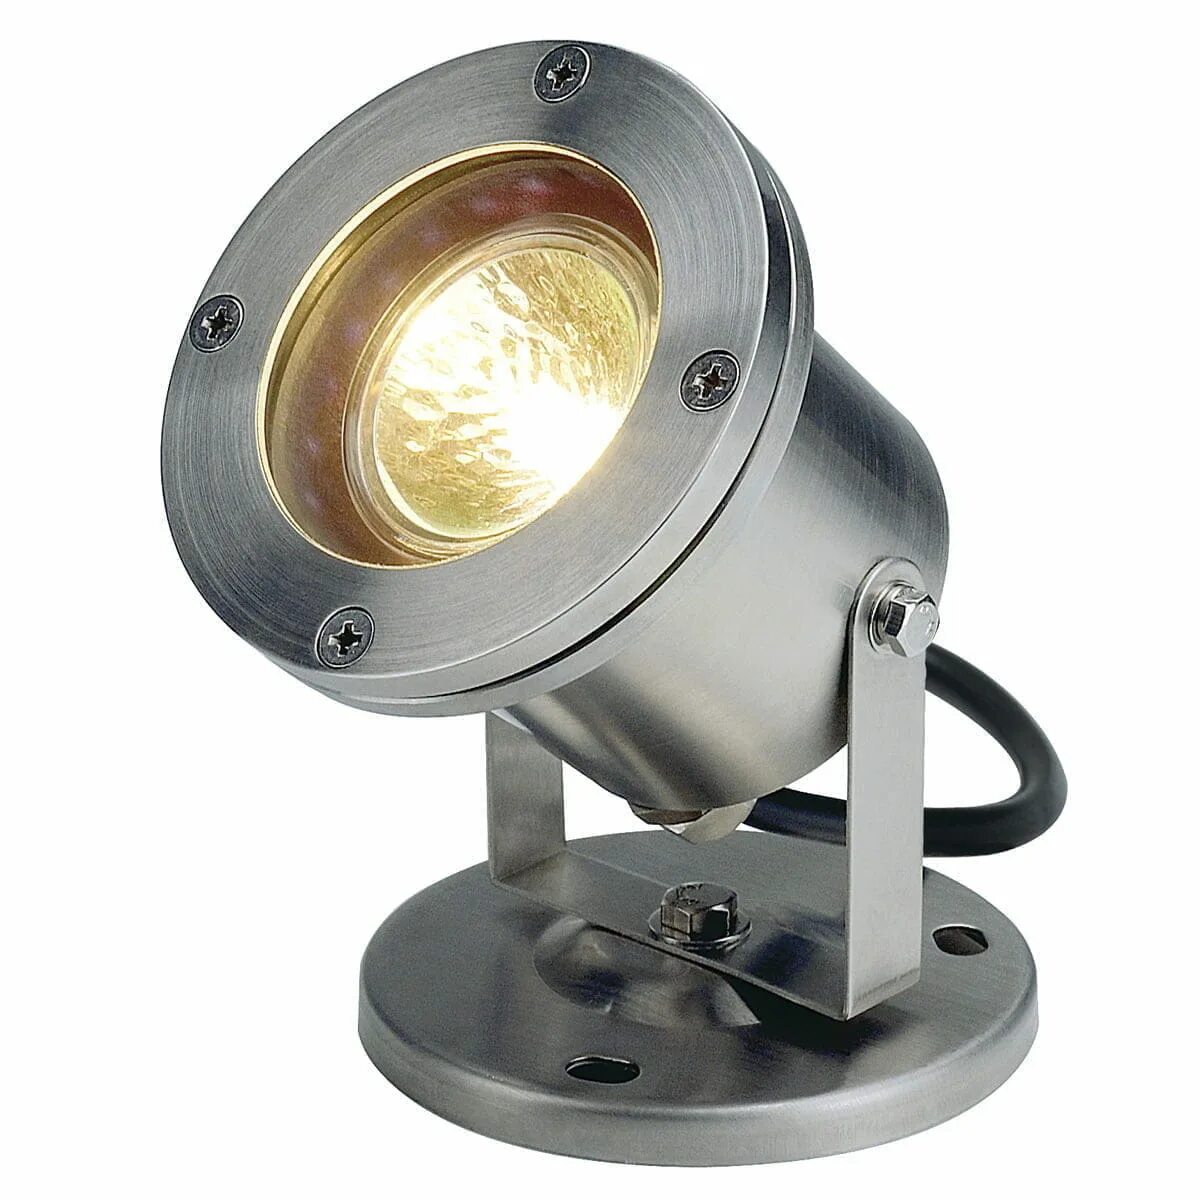 Прожектор галогенный SLV Nautilus 35w 229090. Прожектор SLV Nautilus 1001965. Прожектор SLV 1001633. Прожектор SLV 1001635. Подсветка уличная светильники